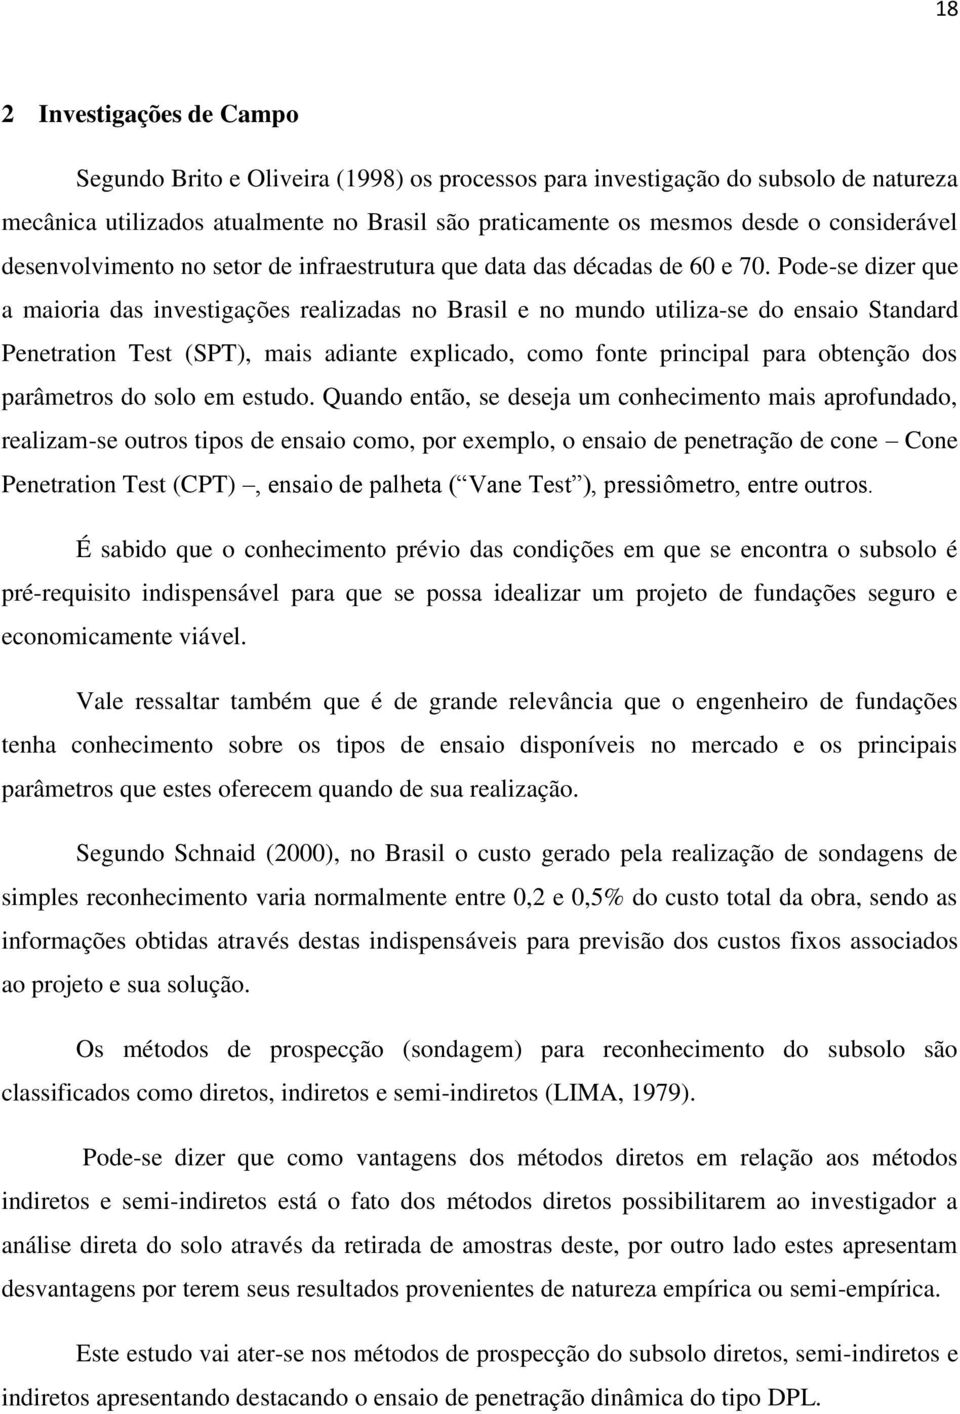 Pode-se dizer que a maioria das investigações realizadas no Brasil e no mundo utiliza-se do ensaio Standard Penetration Test (SPT), mais adiante explicado, como fonte principal para obtenção dos